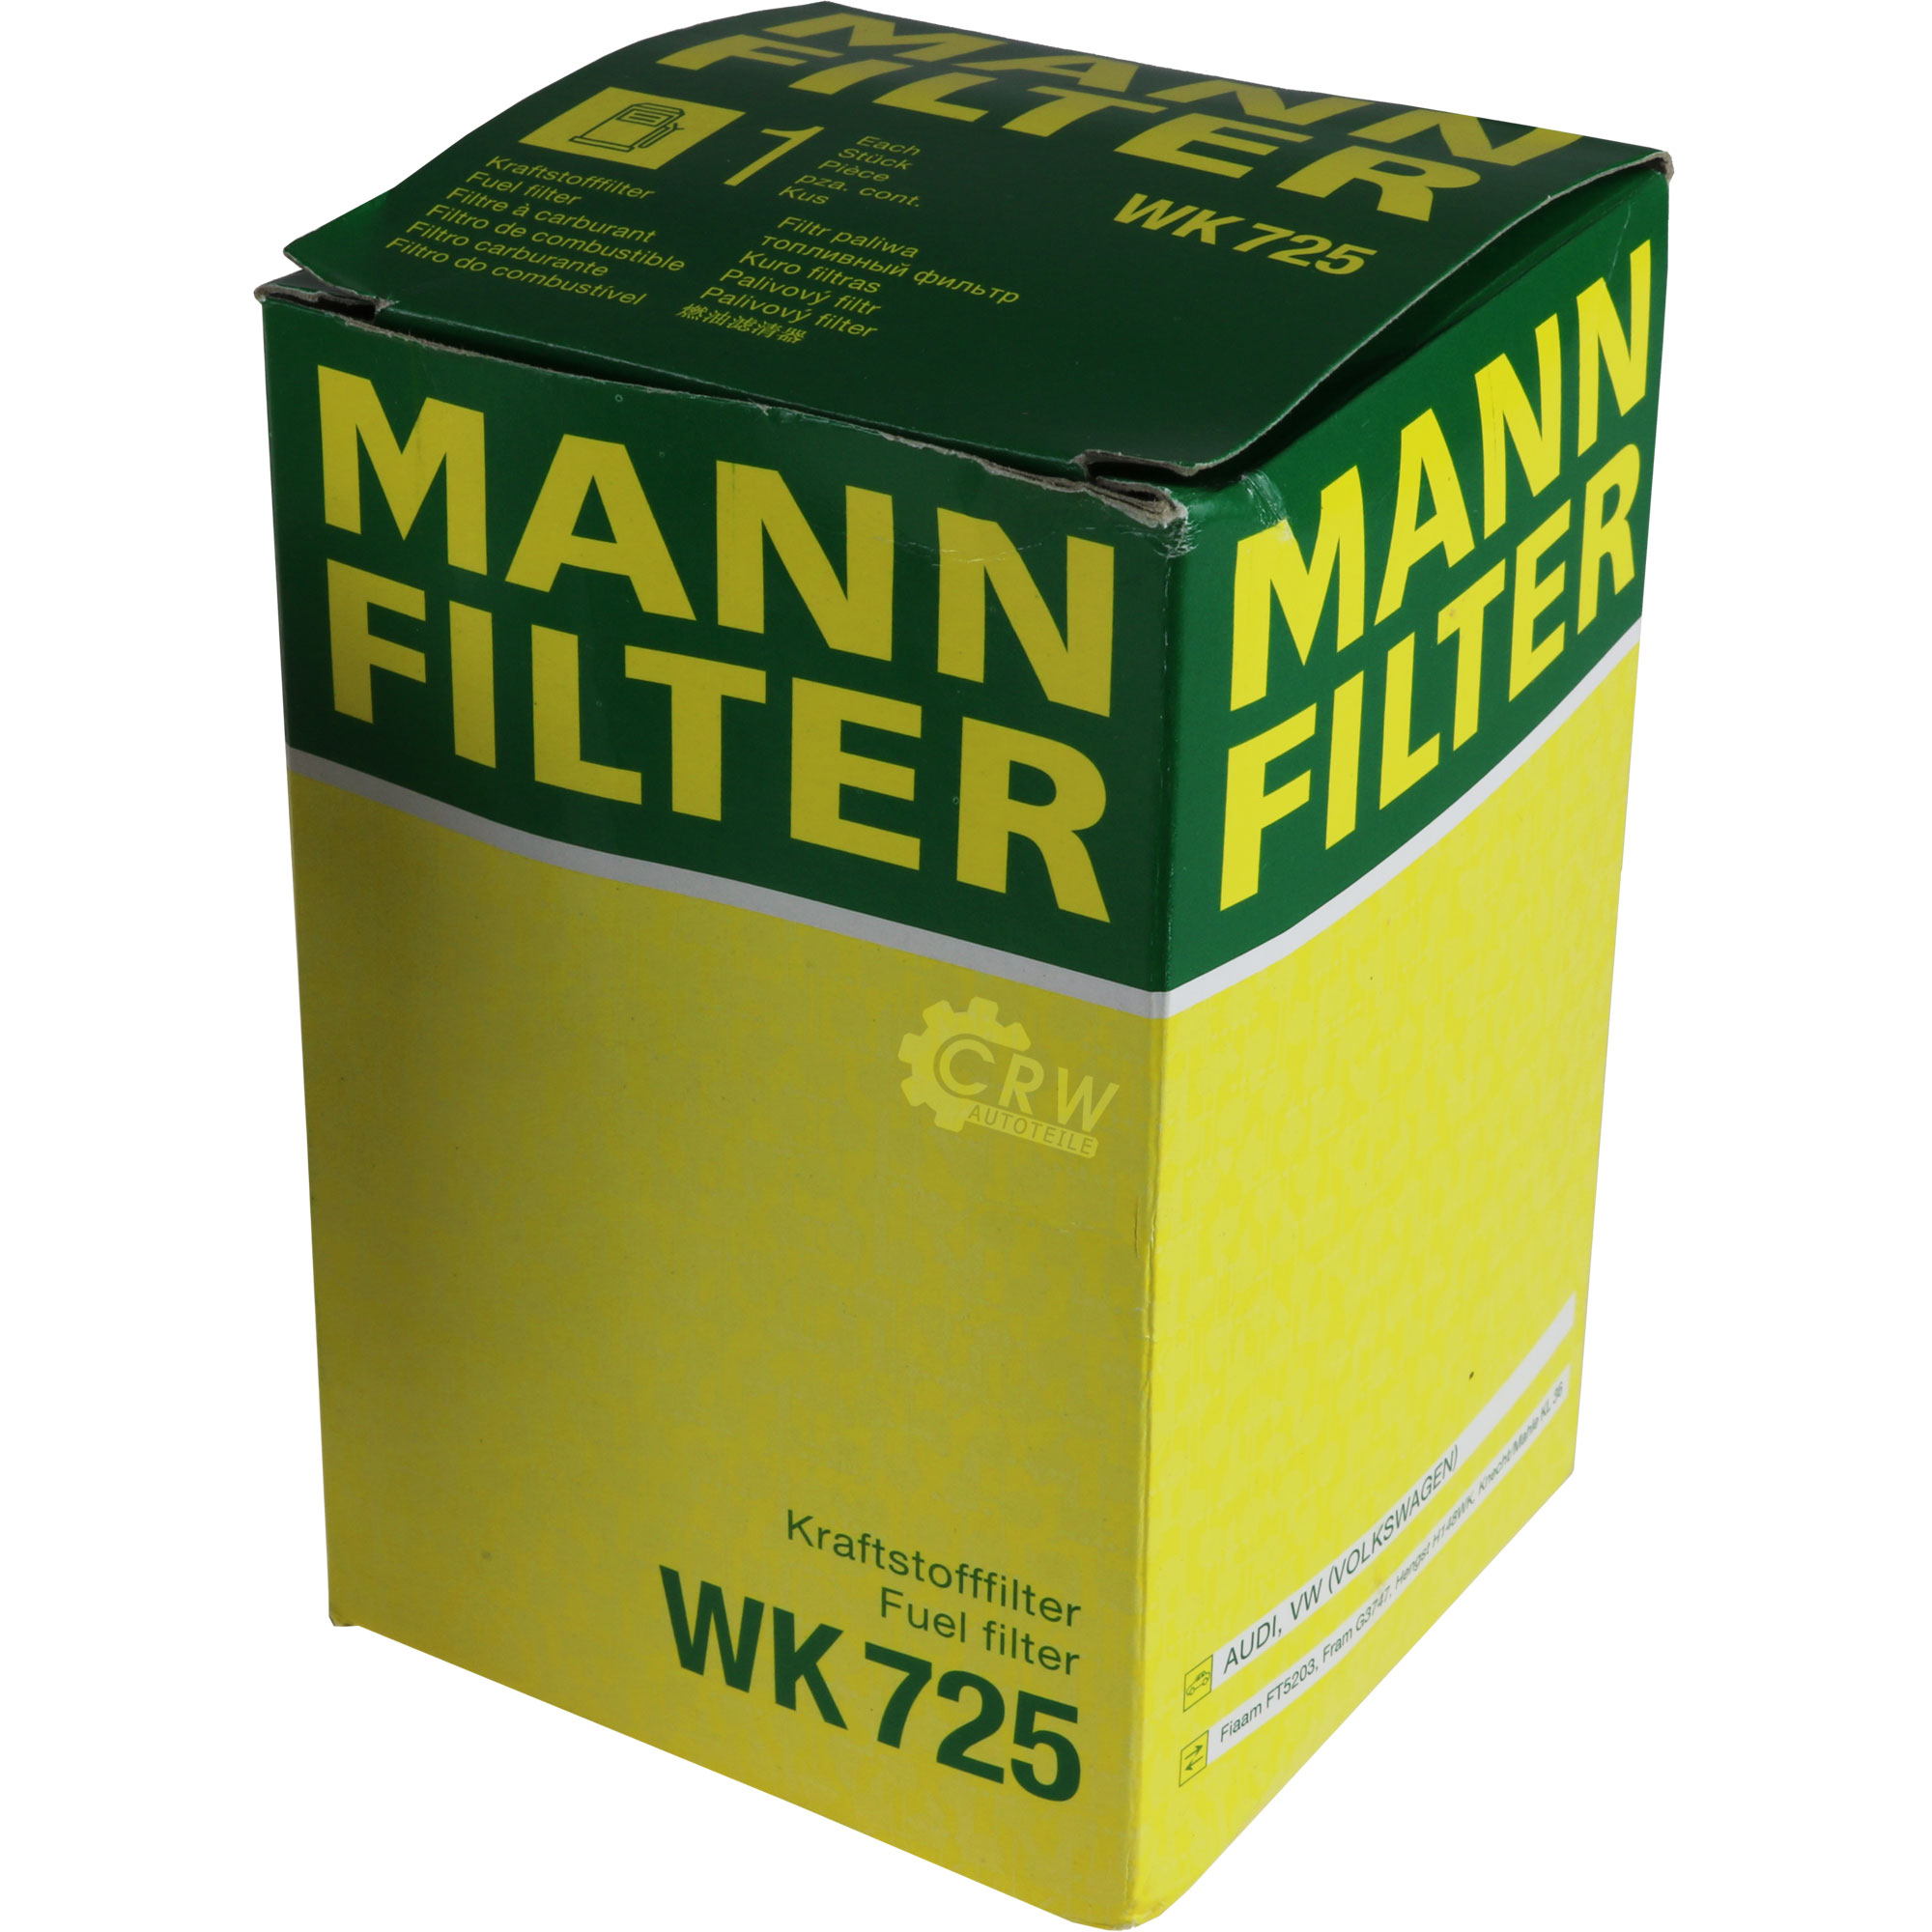 MANN-FILTER Kraftstofffilter WK 725 Fuel Filter